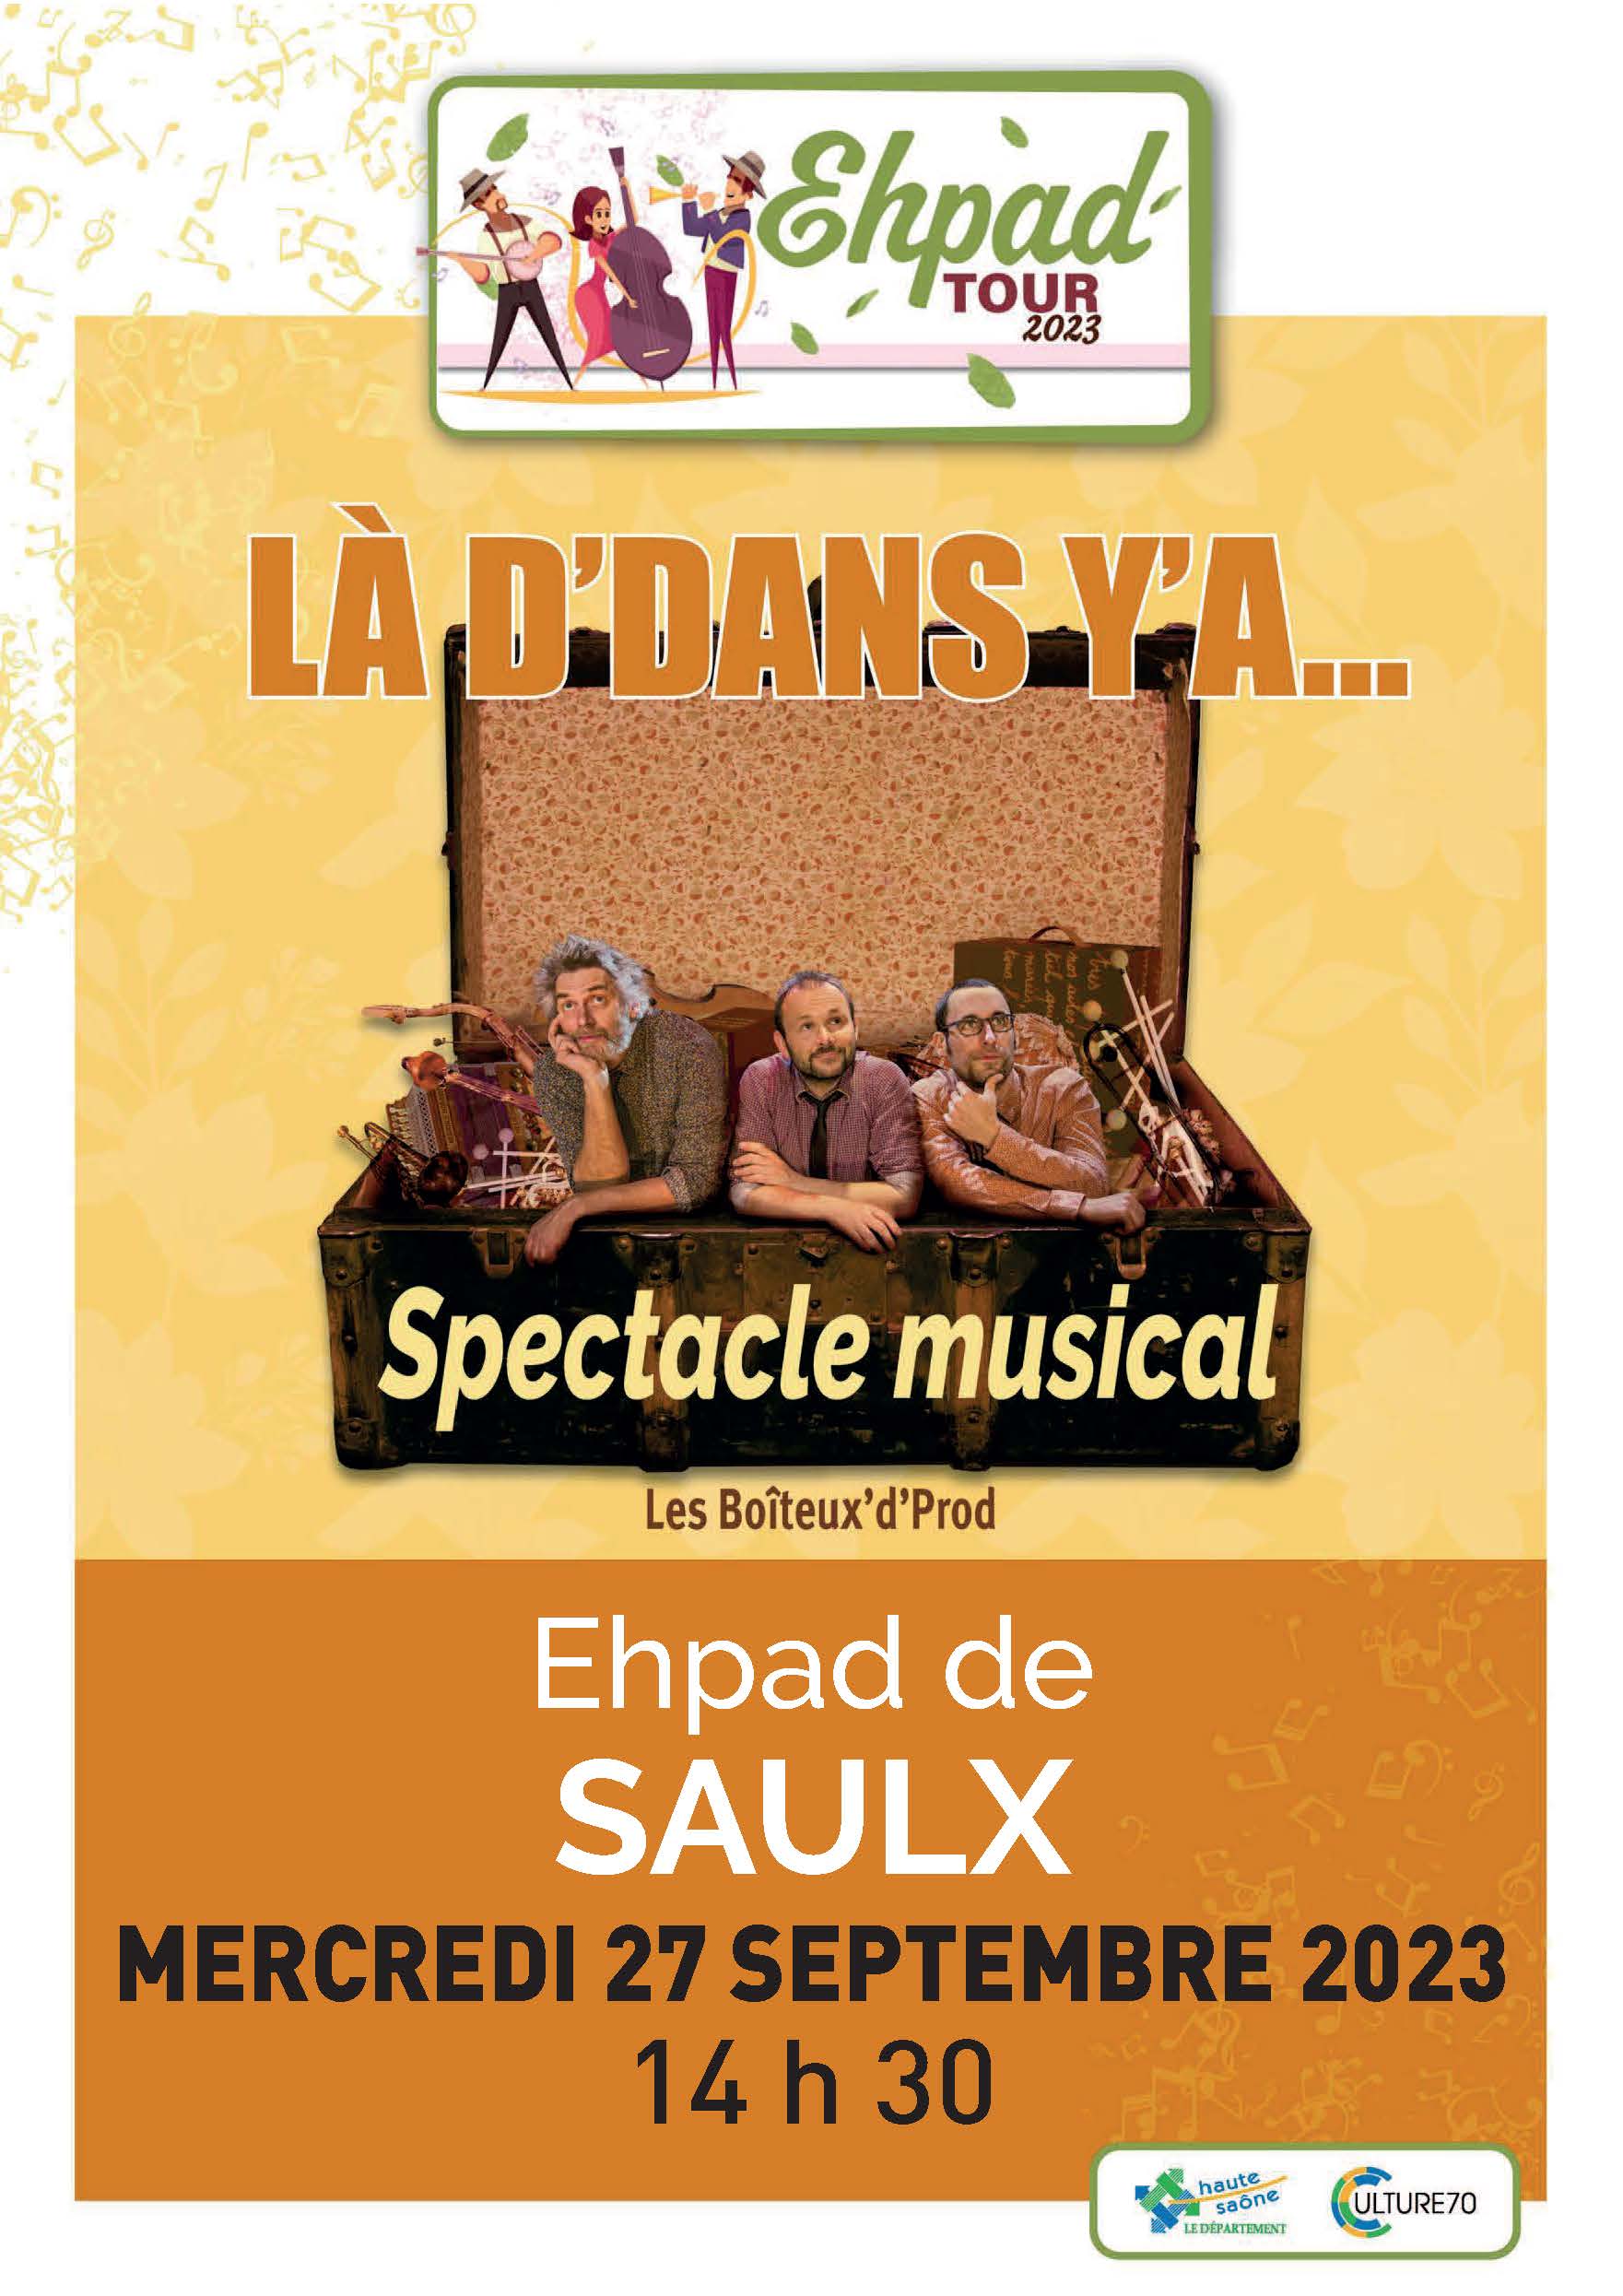 EHPAD Tour 2023 Saulx 27/09